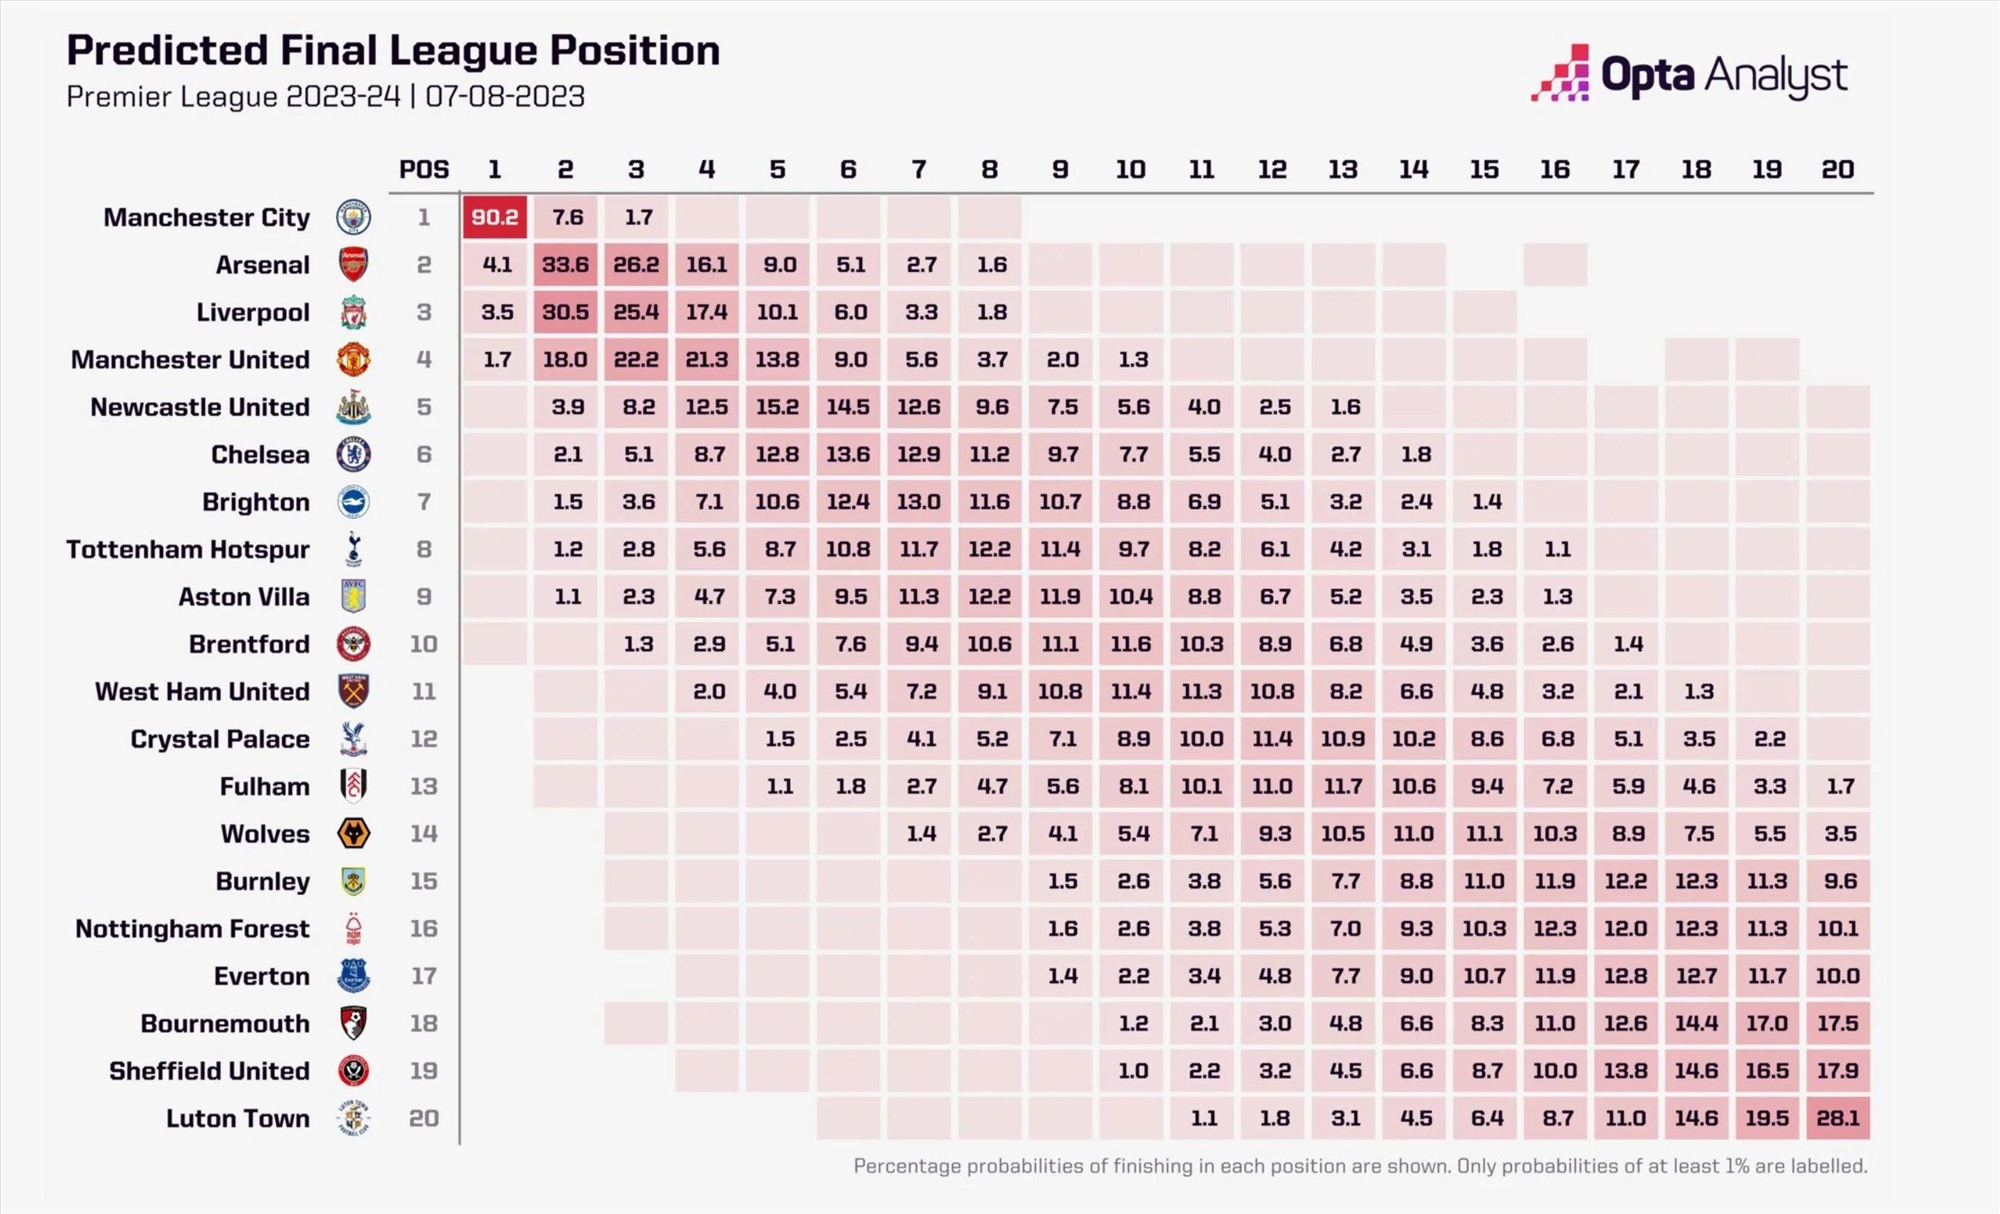 Thống kê về tỉ lệ vô địch, xuống hạng của các đội tại Premier League 2023-2024. Ảnh: Opta Analyst